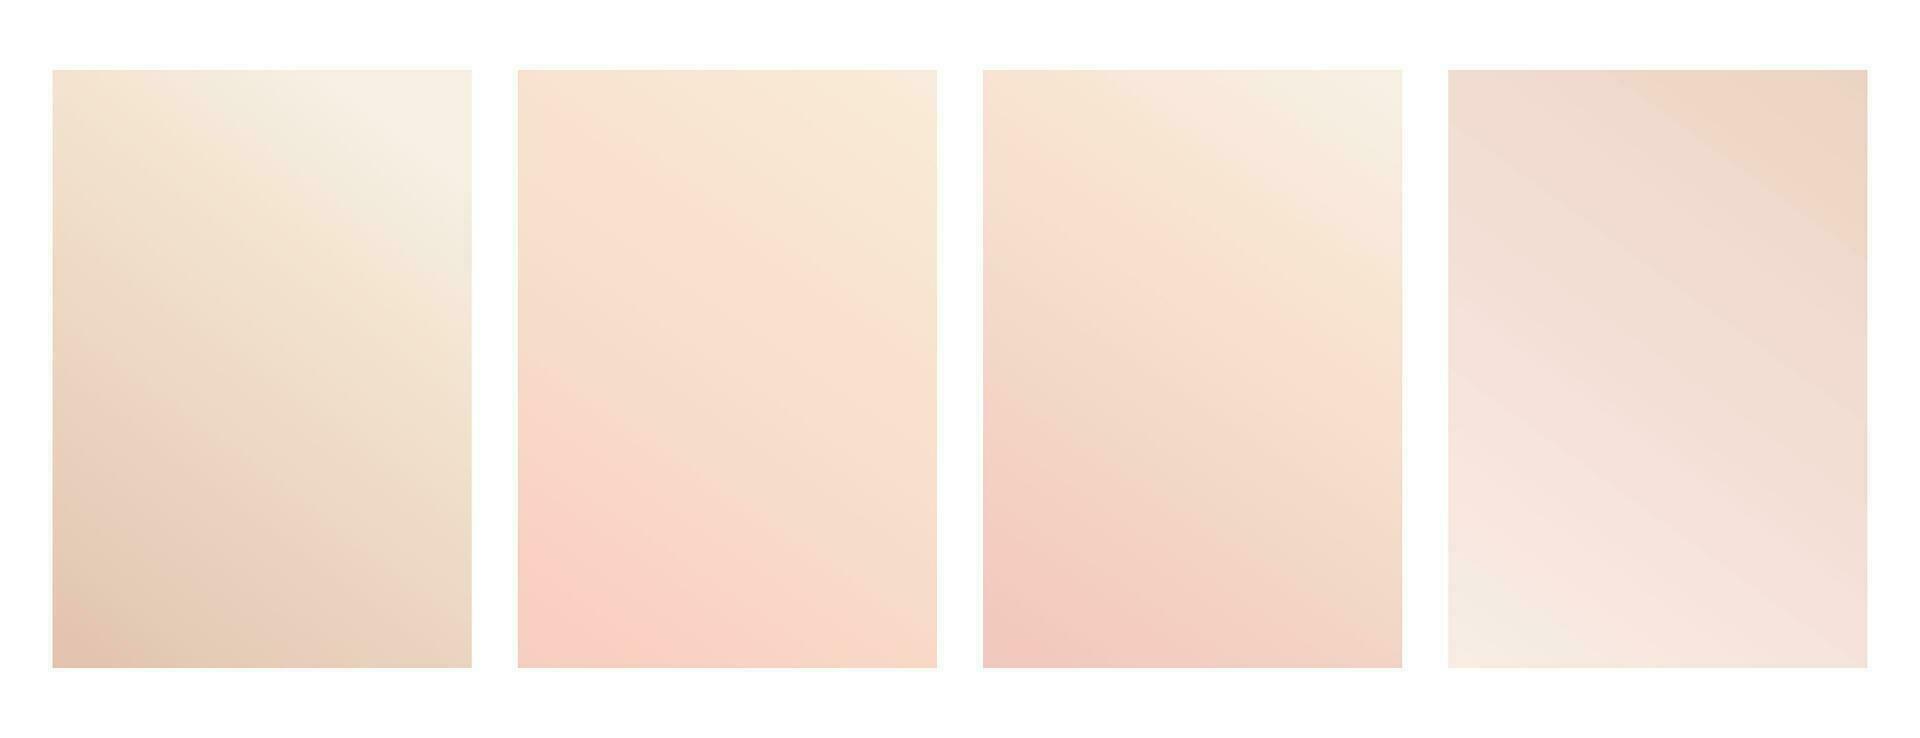 desnudo degradado. conjunto de carteles con gradación de calentar beige sombras. pastel colores para diseño vector